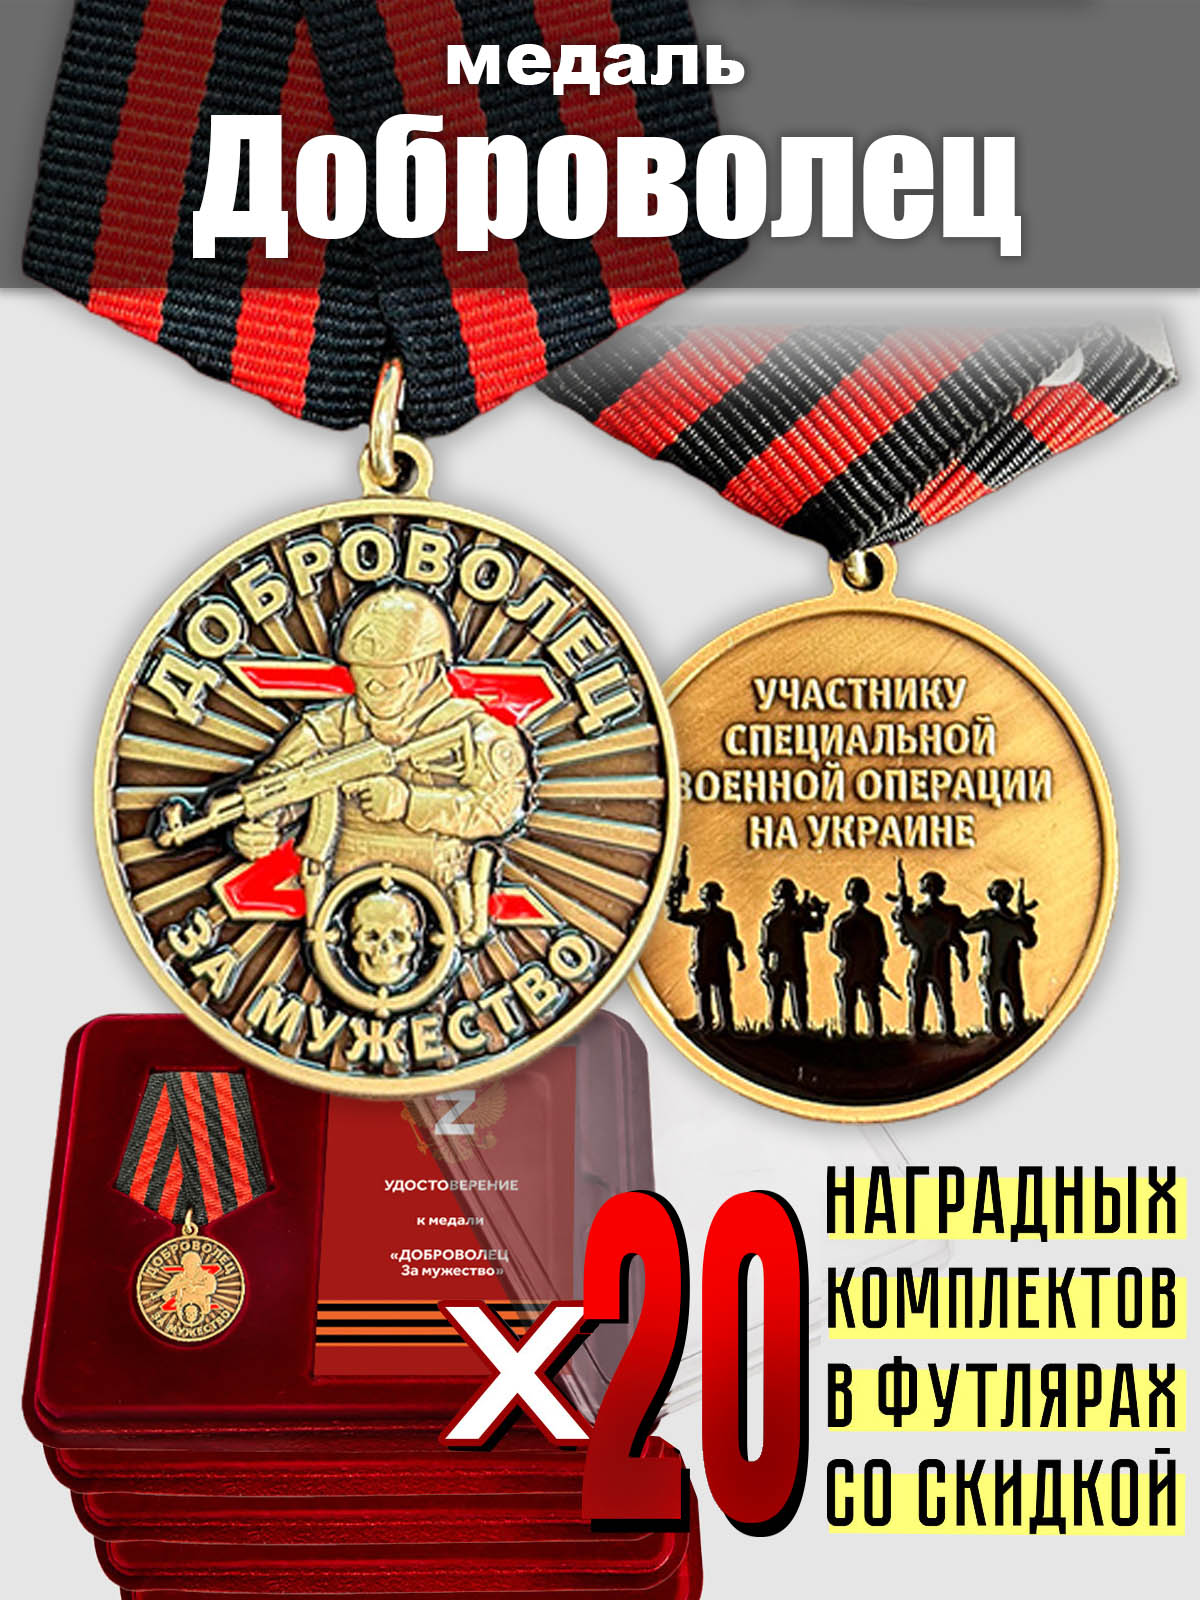 Медали "За мужество" для добровольцев СВО - комплект 20 шт.